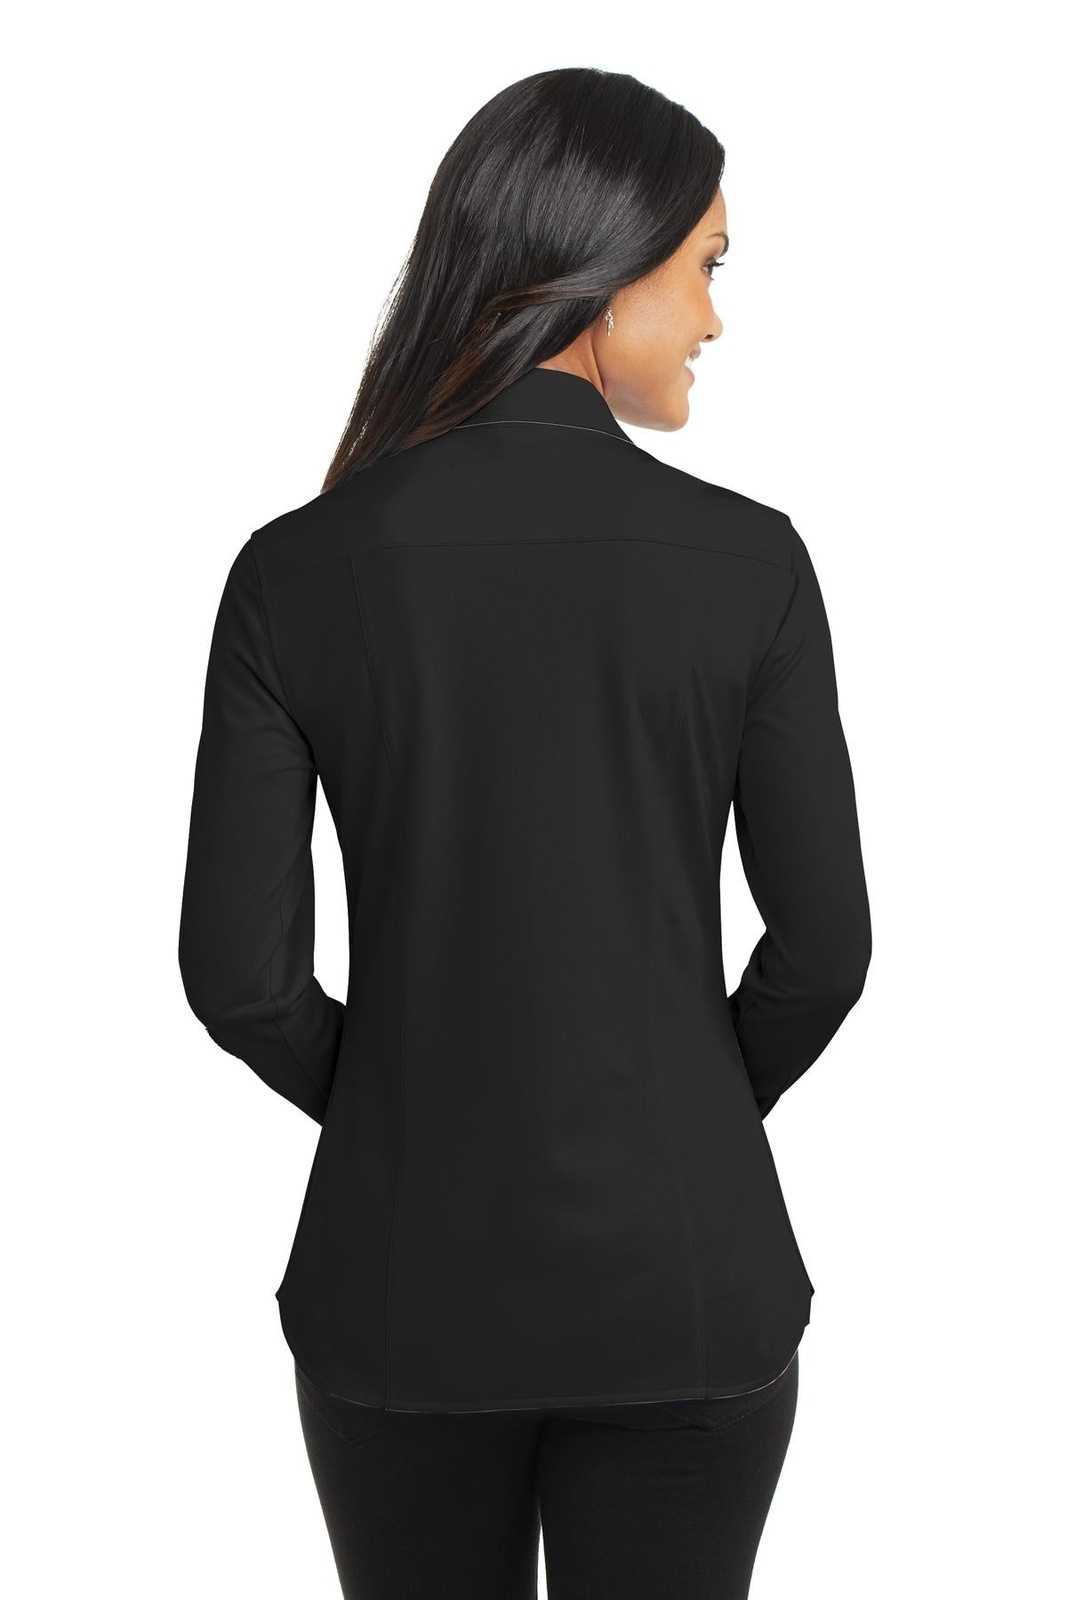 Port Authority L570 Ladies Dimension Knit Dress Shirt - Black - HIT a Double - 2